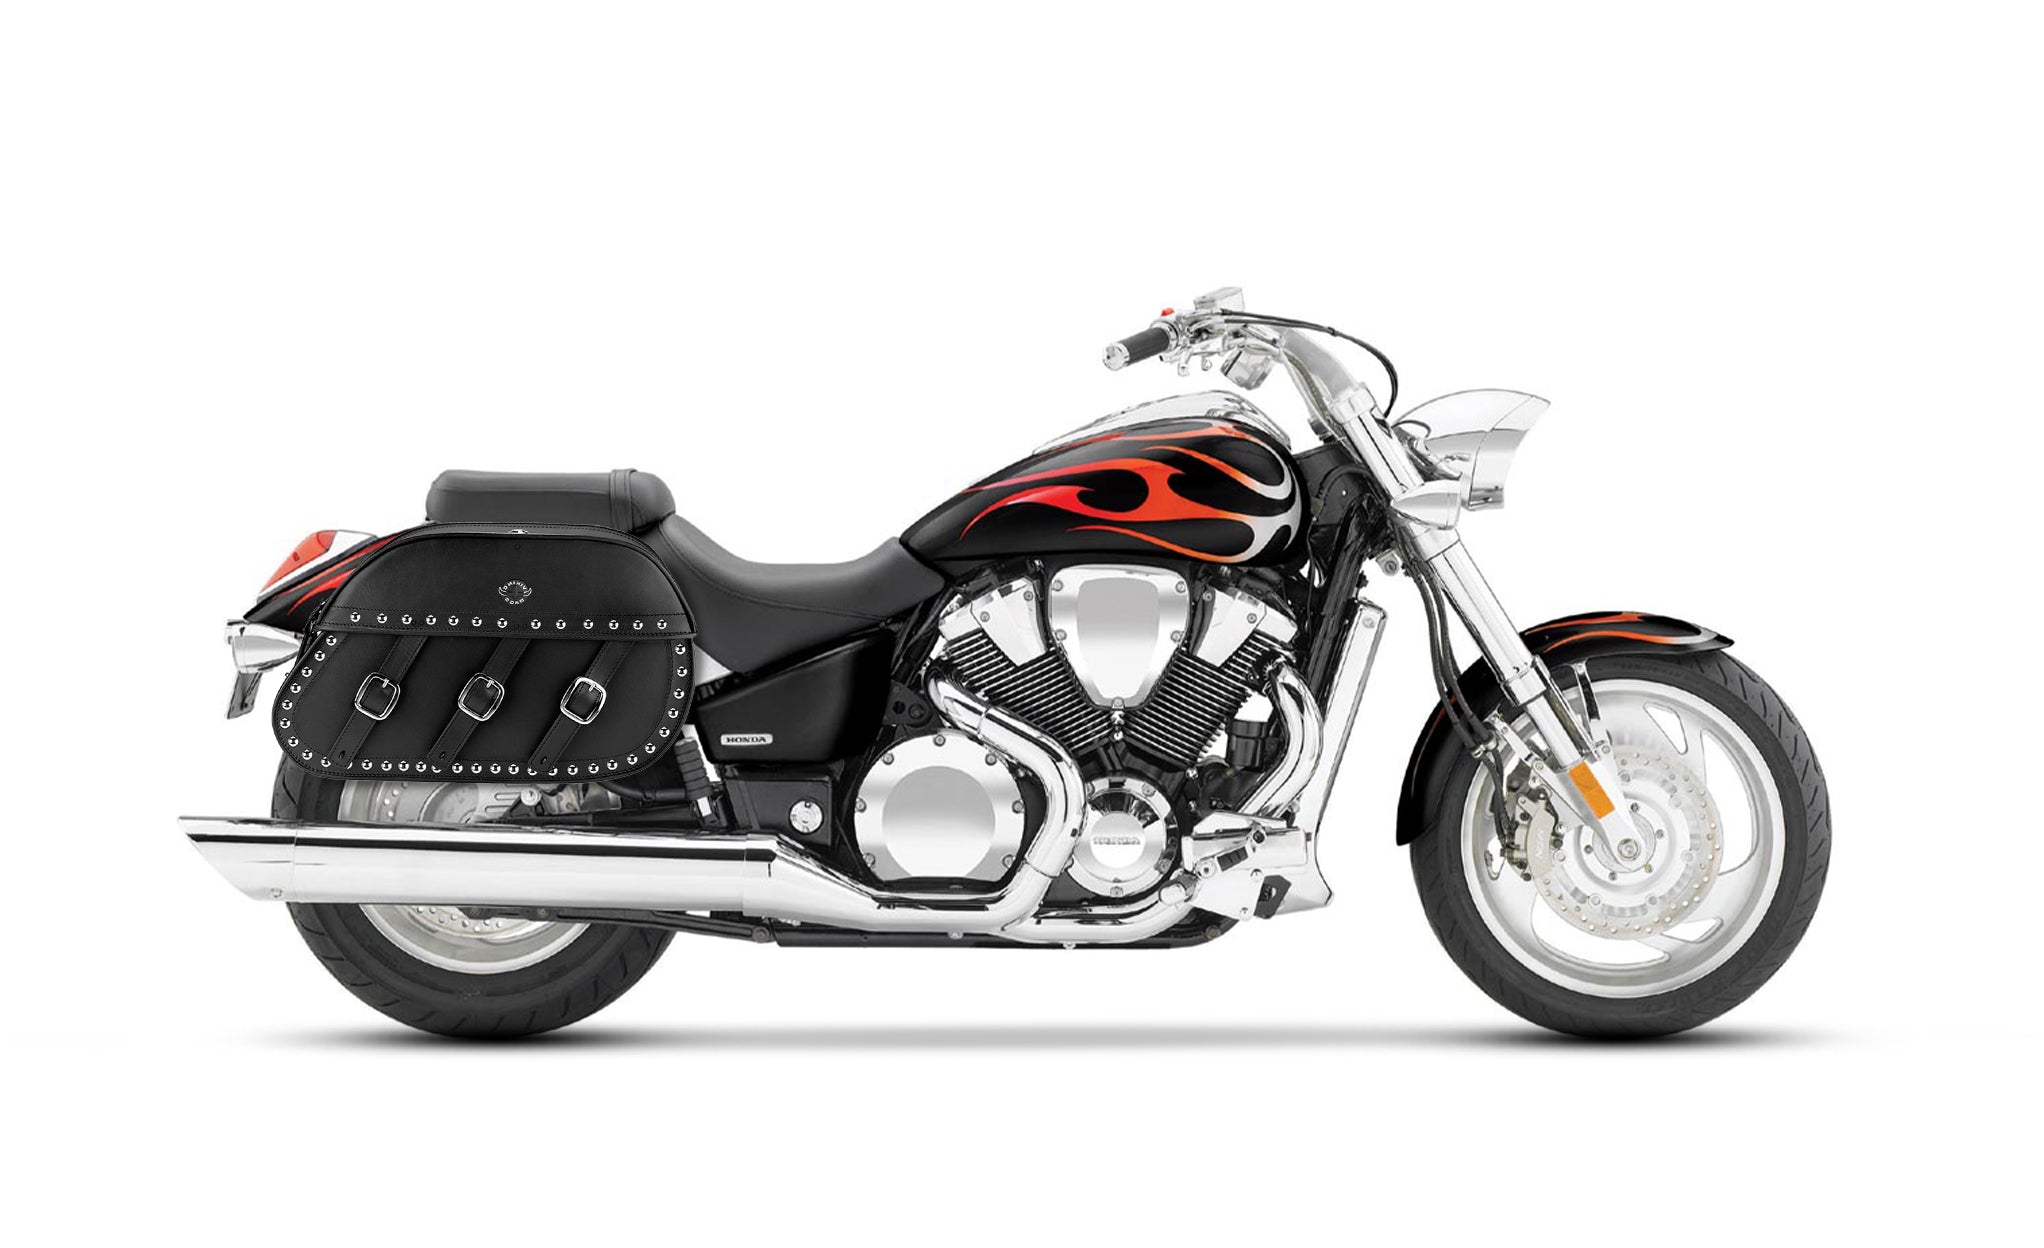 34L - Trianon Extra Large Honda VTX 1800 C Studded Leather Motorcycle Saddlebags on Bike Photo @expand